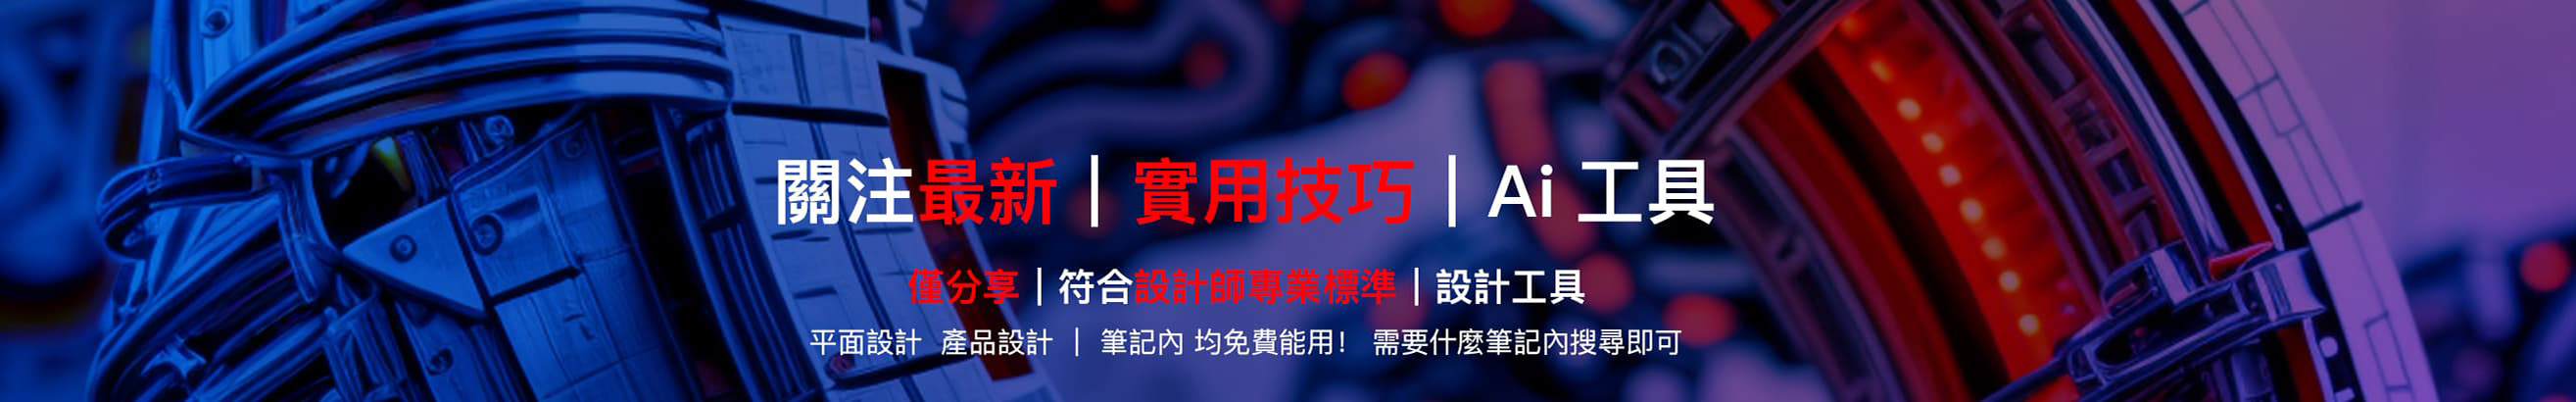 吳 楊峰's profile banner